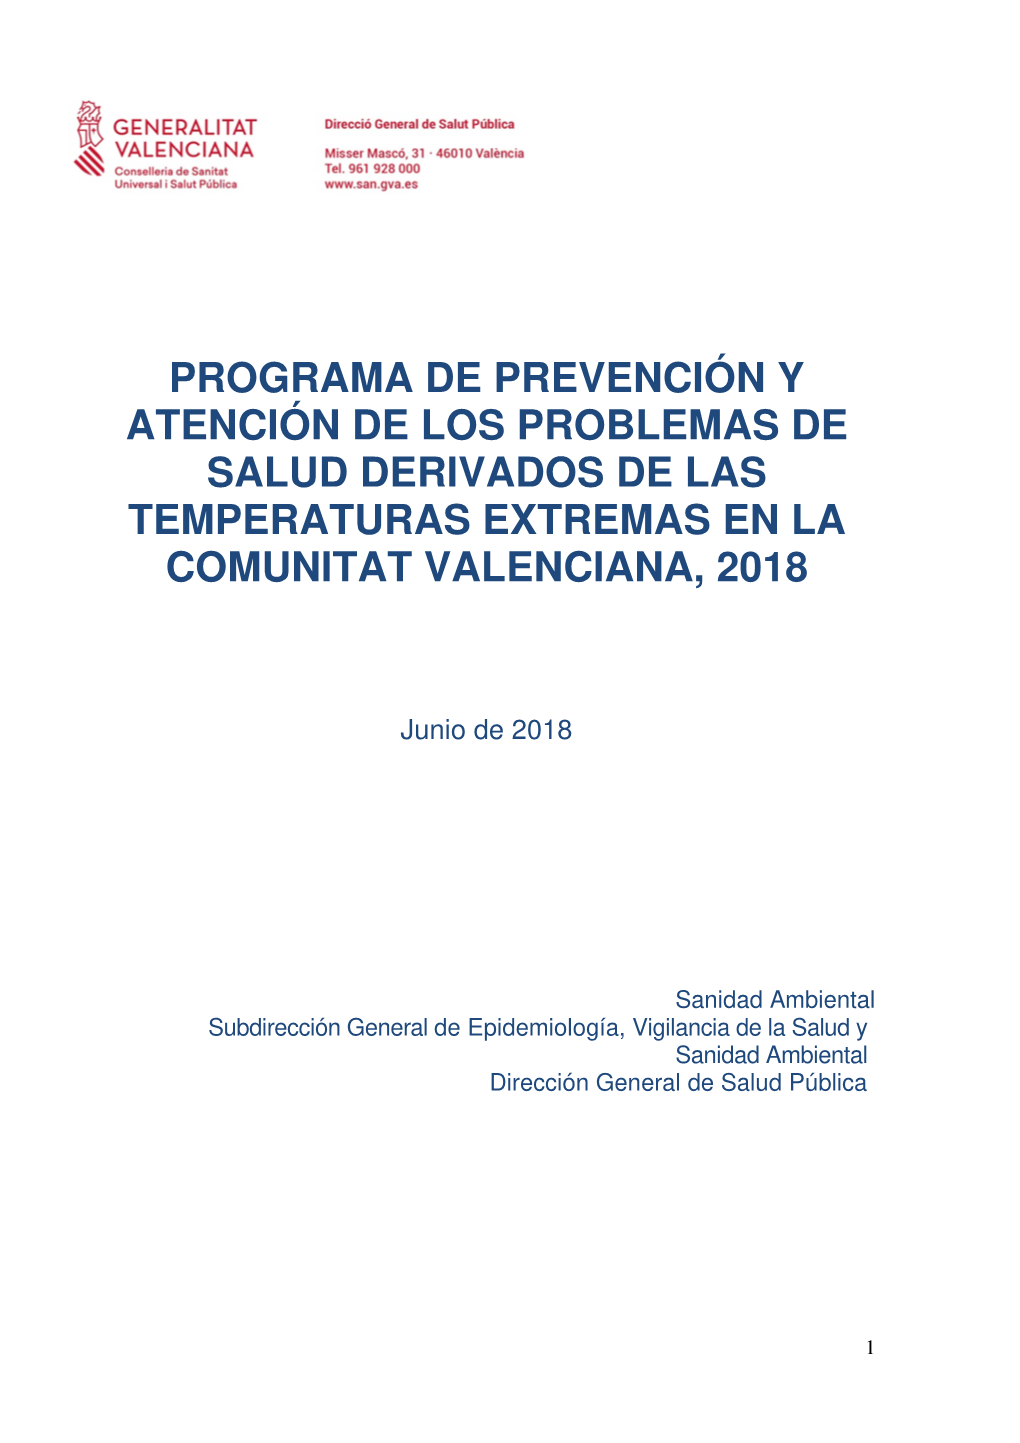 Programa De Prevención Y Atención De Los Problemas De Salud Derivados De Las Temperaturas Extremas En La Comunitat Valenciana, 2018